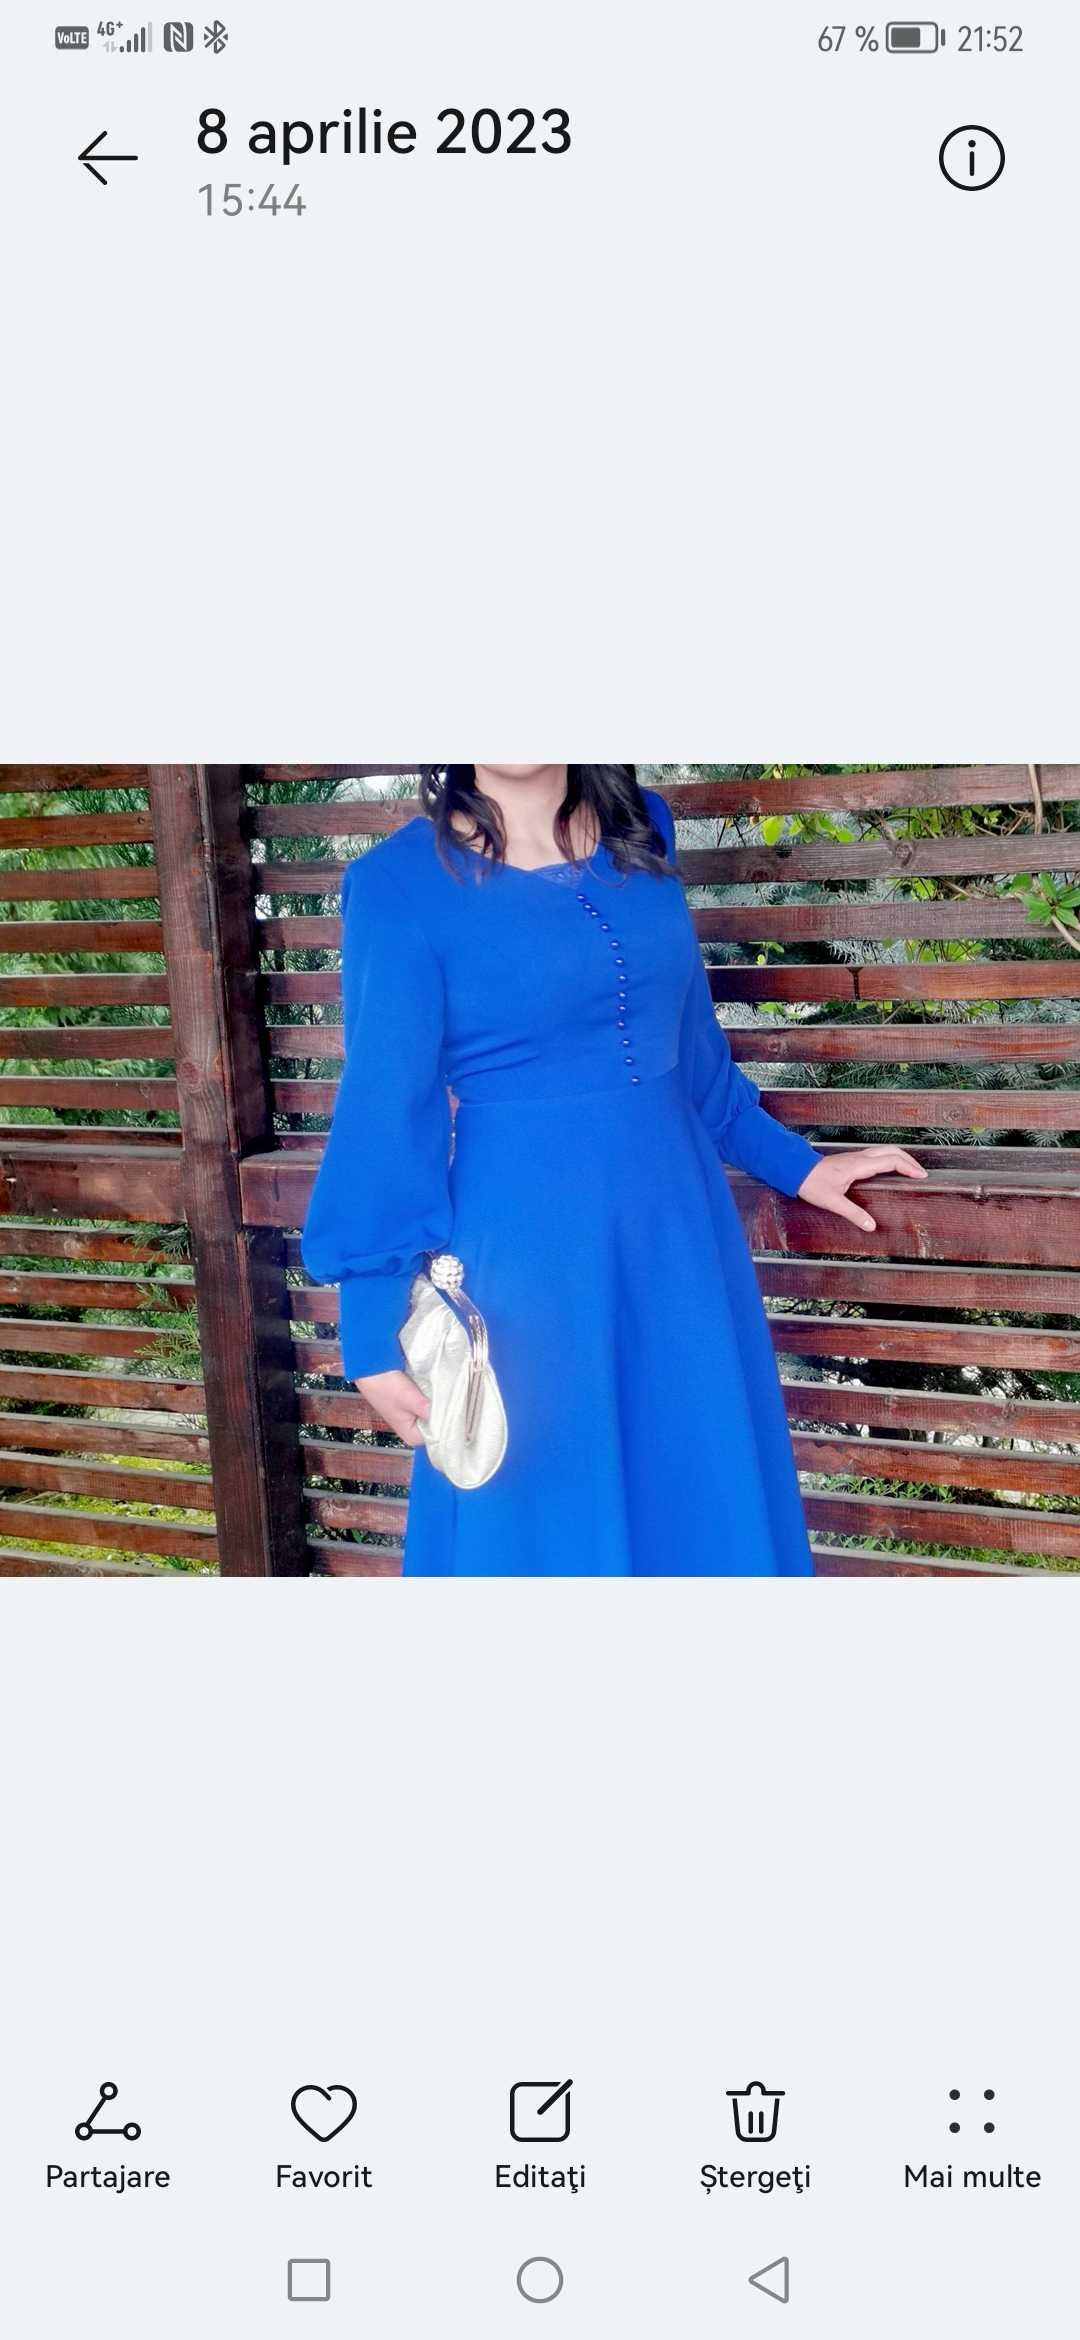 rochie eleganta albastra